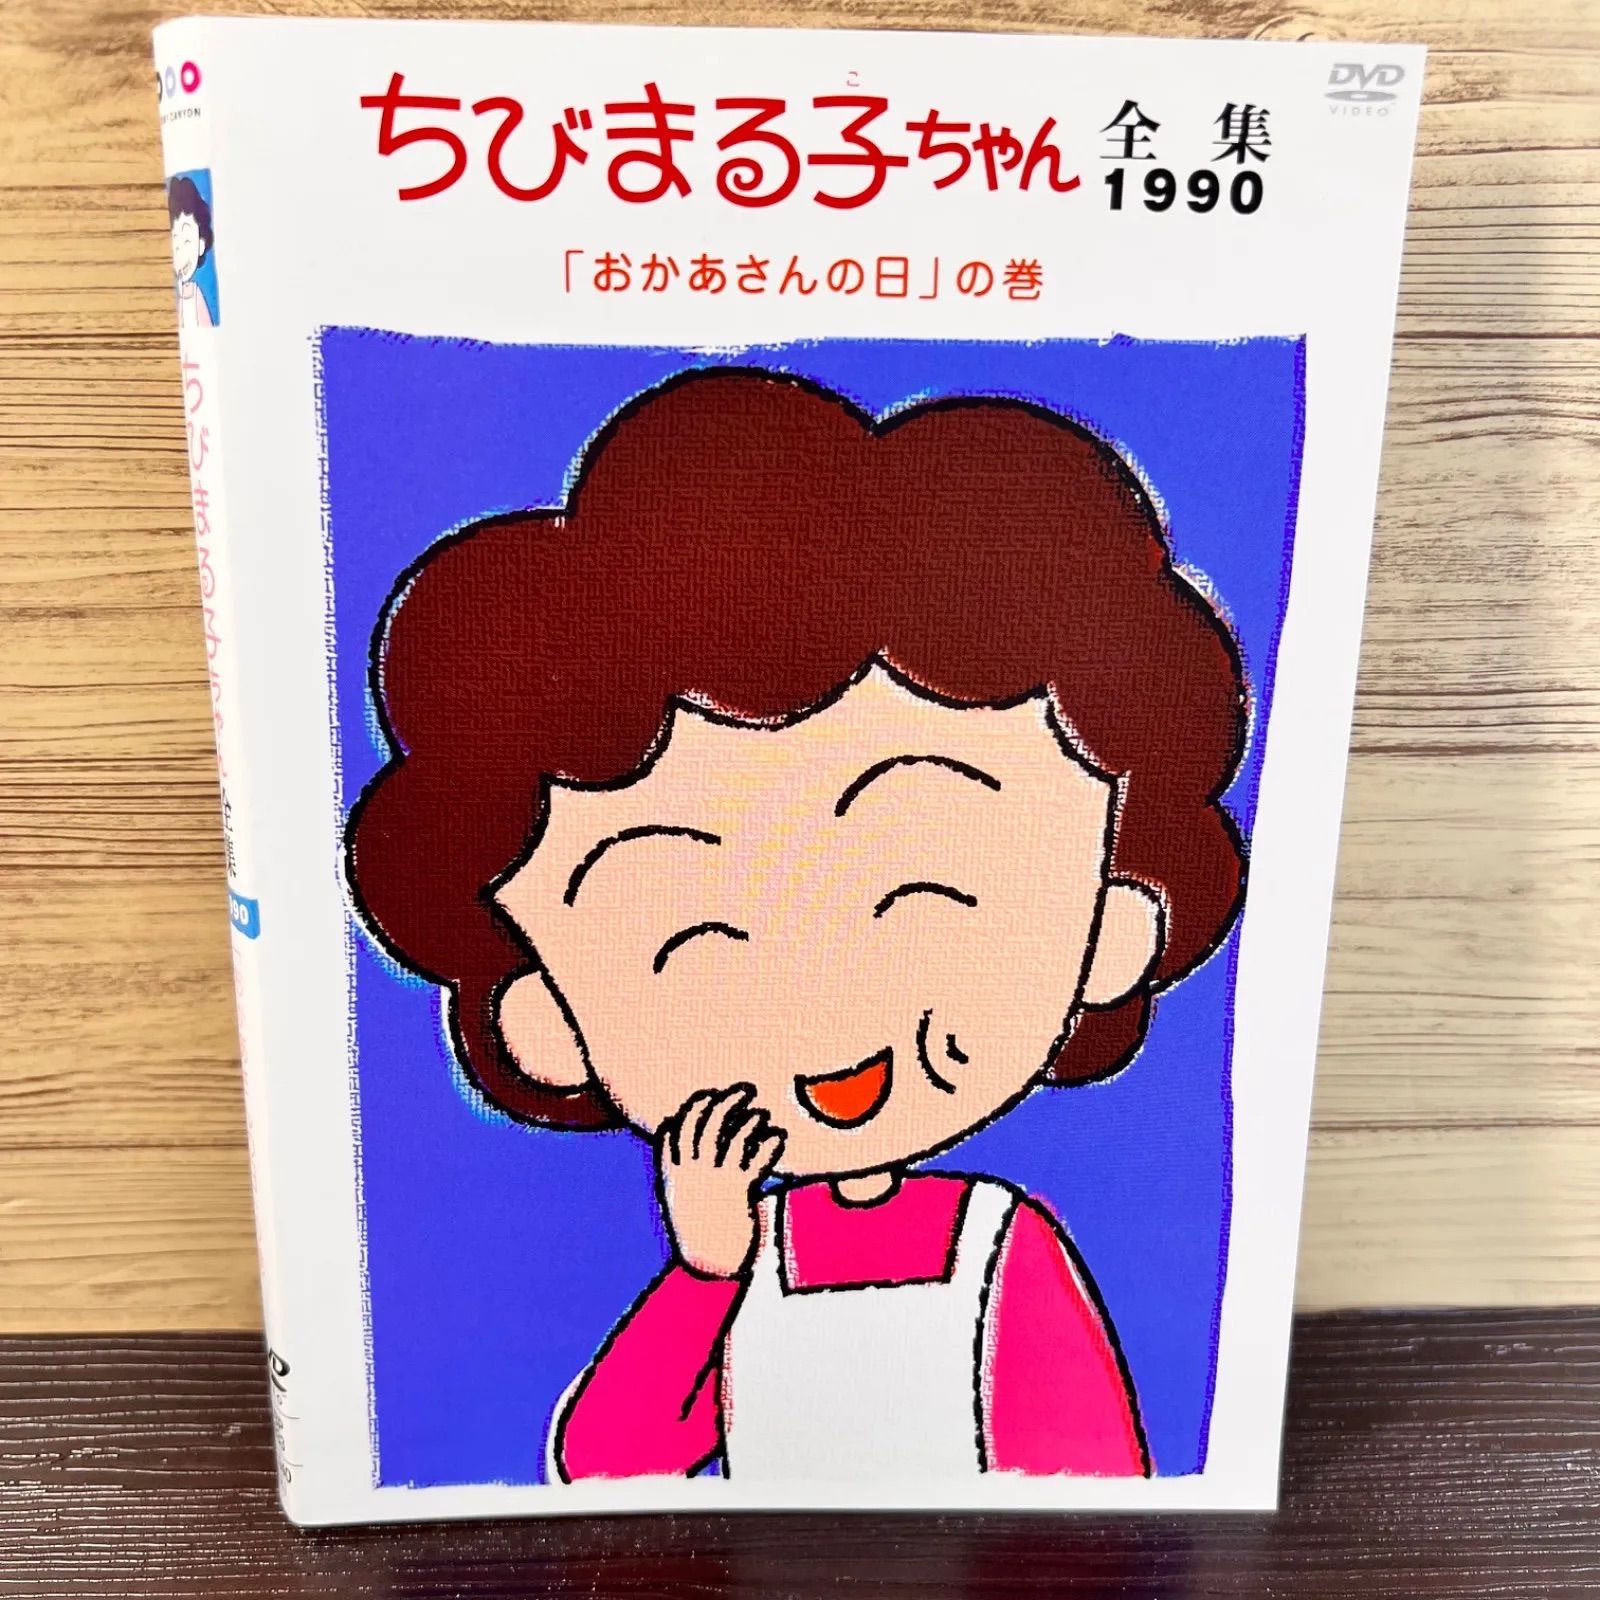 ちびまる子ちゃん 全集 1990 お母さんの日の巻き DVD - メルカリ